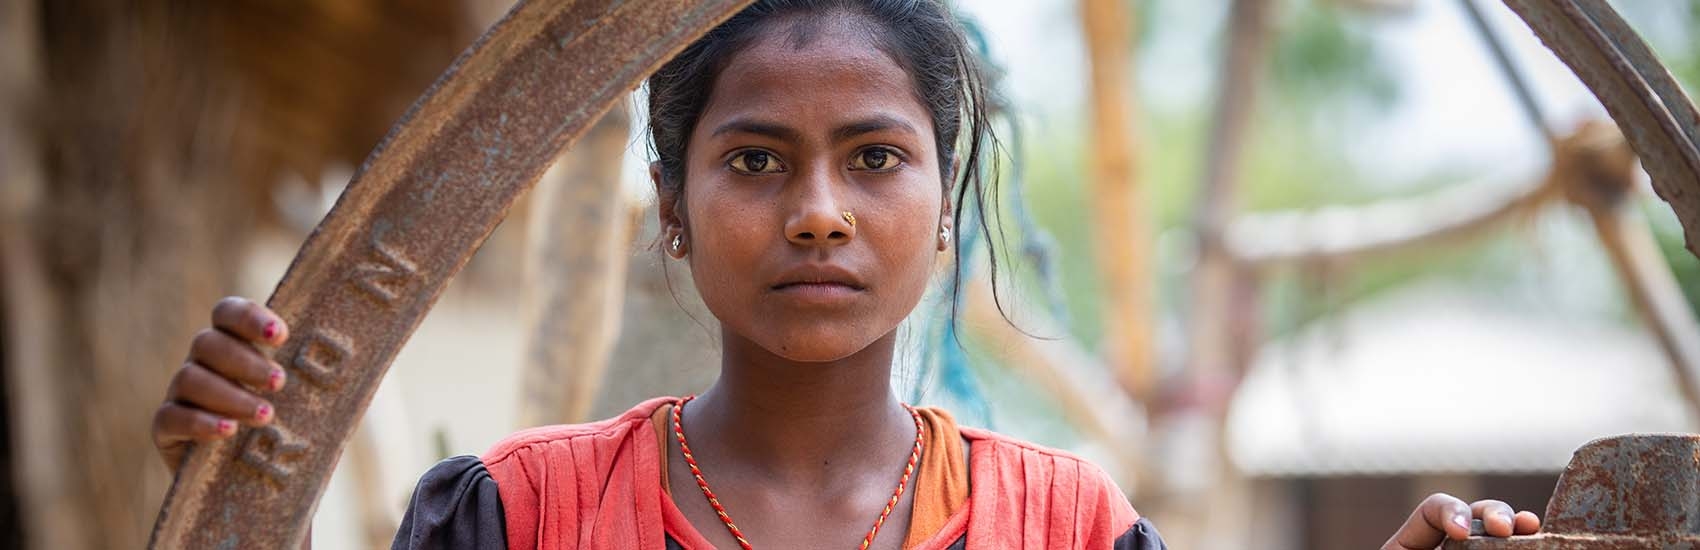 Uttar Pradesh Rape Victim Girl by Grand Father Center Story | आजोबांनीच  माझ्यावर बलात्कार केला: वडिलांना तर कधी भेटलेच नाही; आईने 3 लग्न केली; आजी  म्हणते - केस परत घे ...